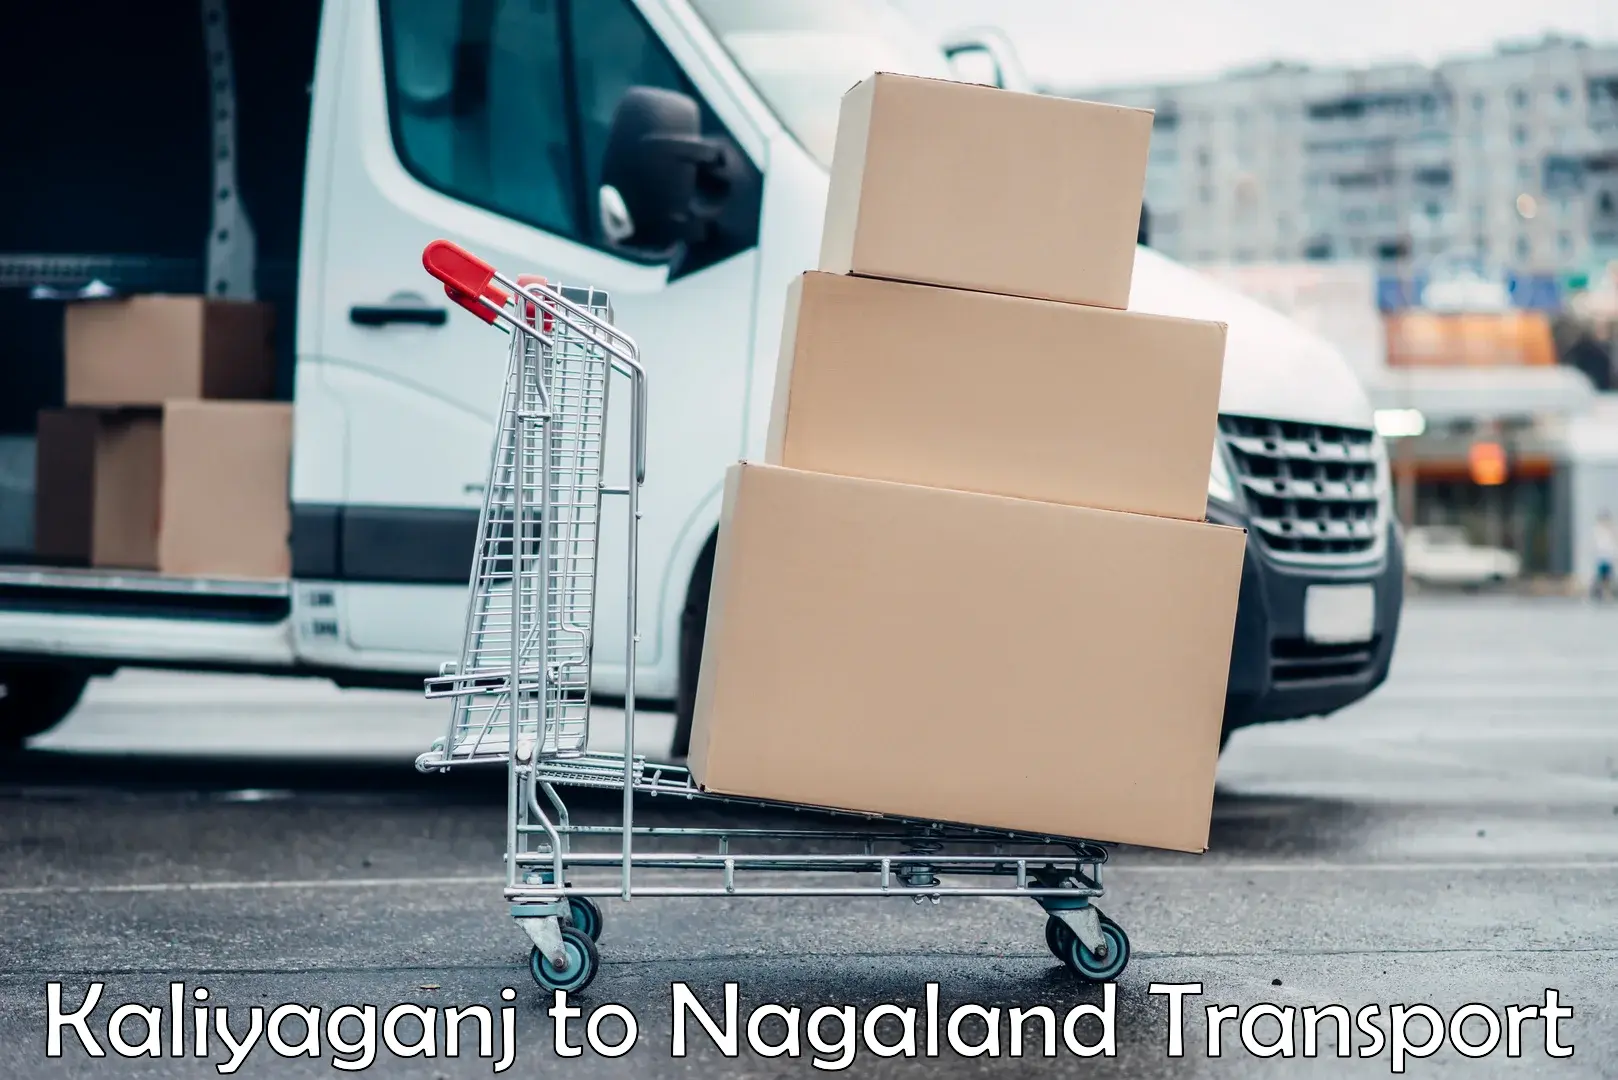 India truck logistics services Kaliyaganj to Nagaland